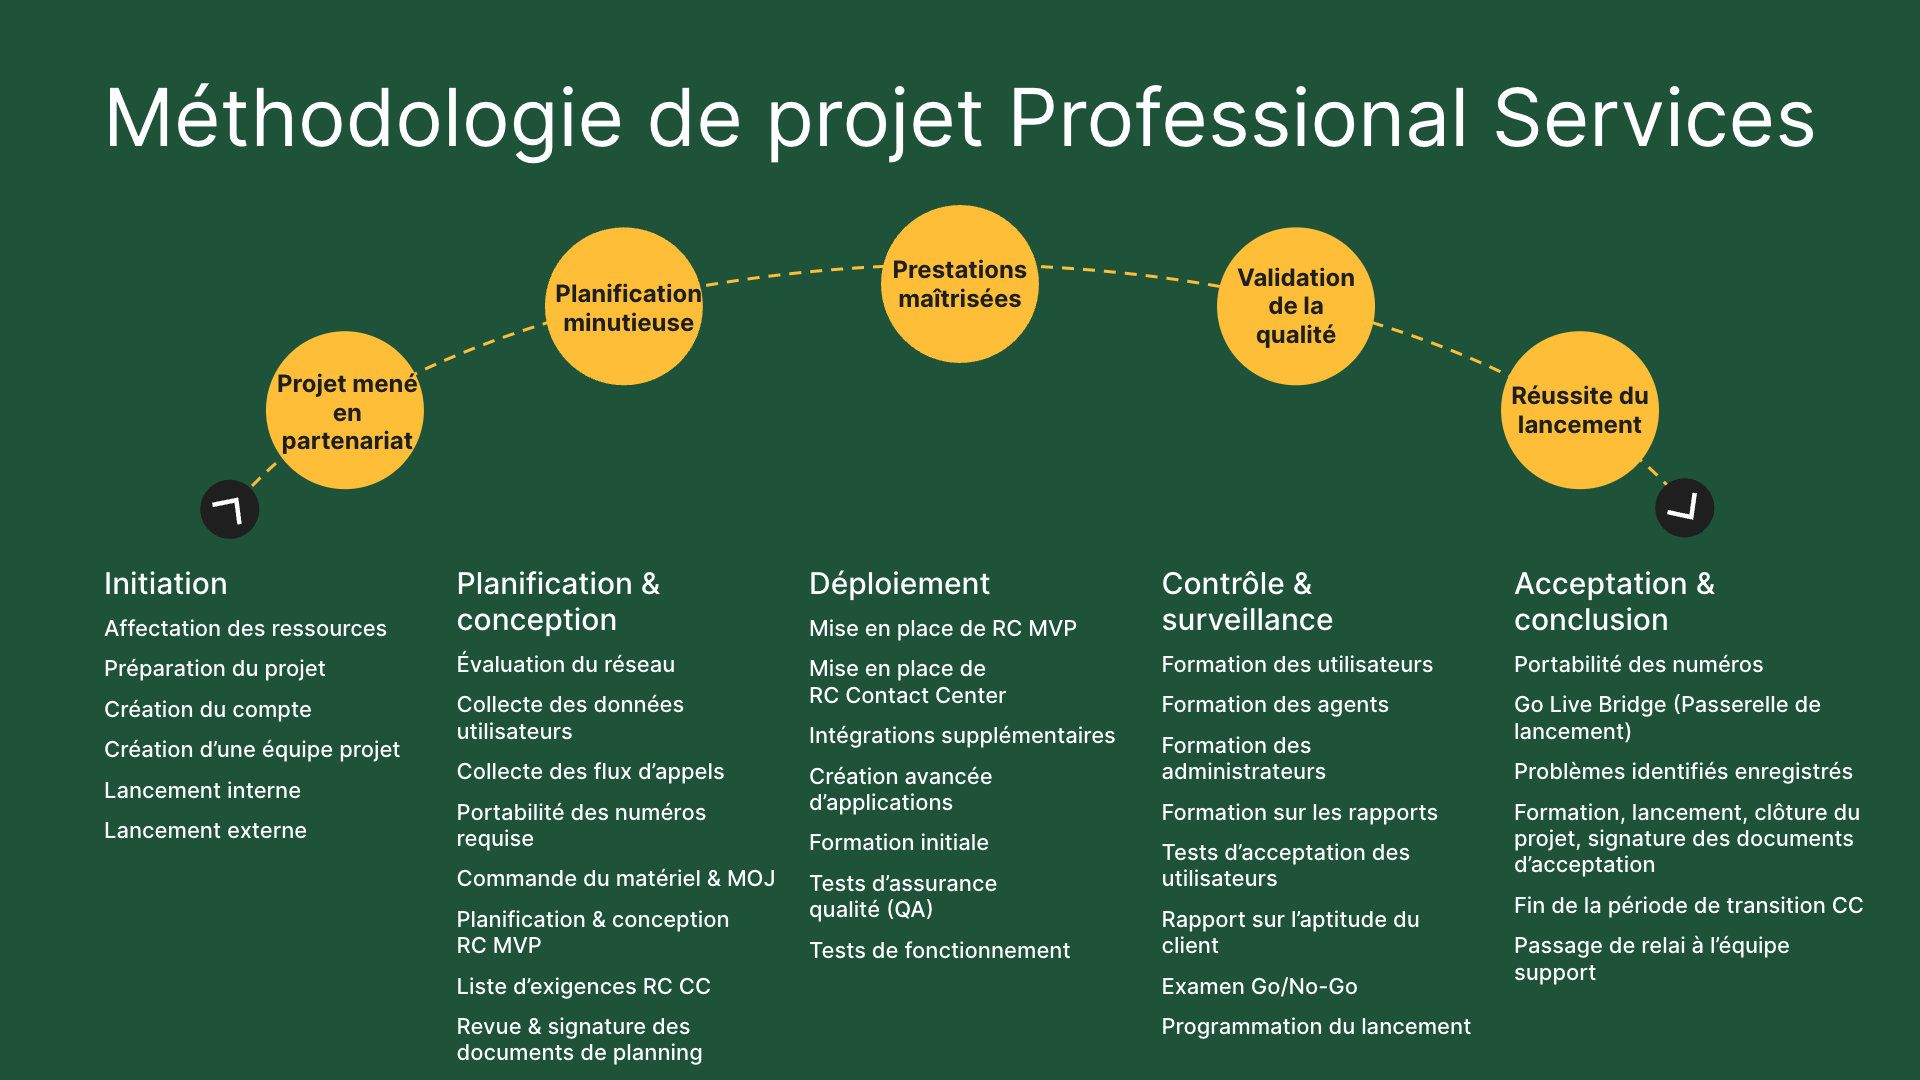 Schéma de la méthodologie de projet appliquée par les Professional Services de RingCentral